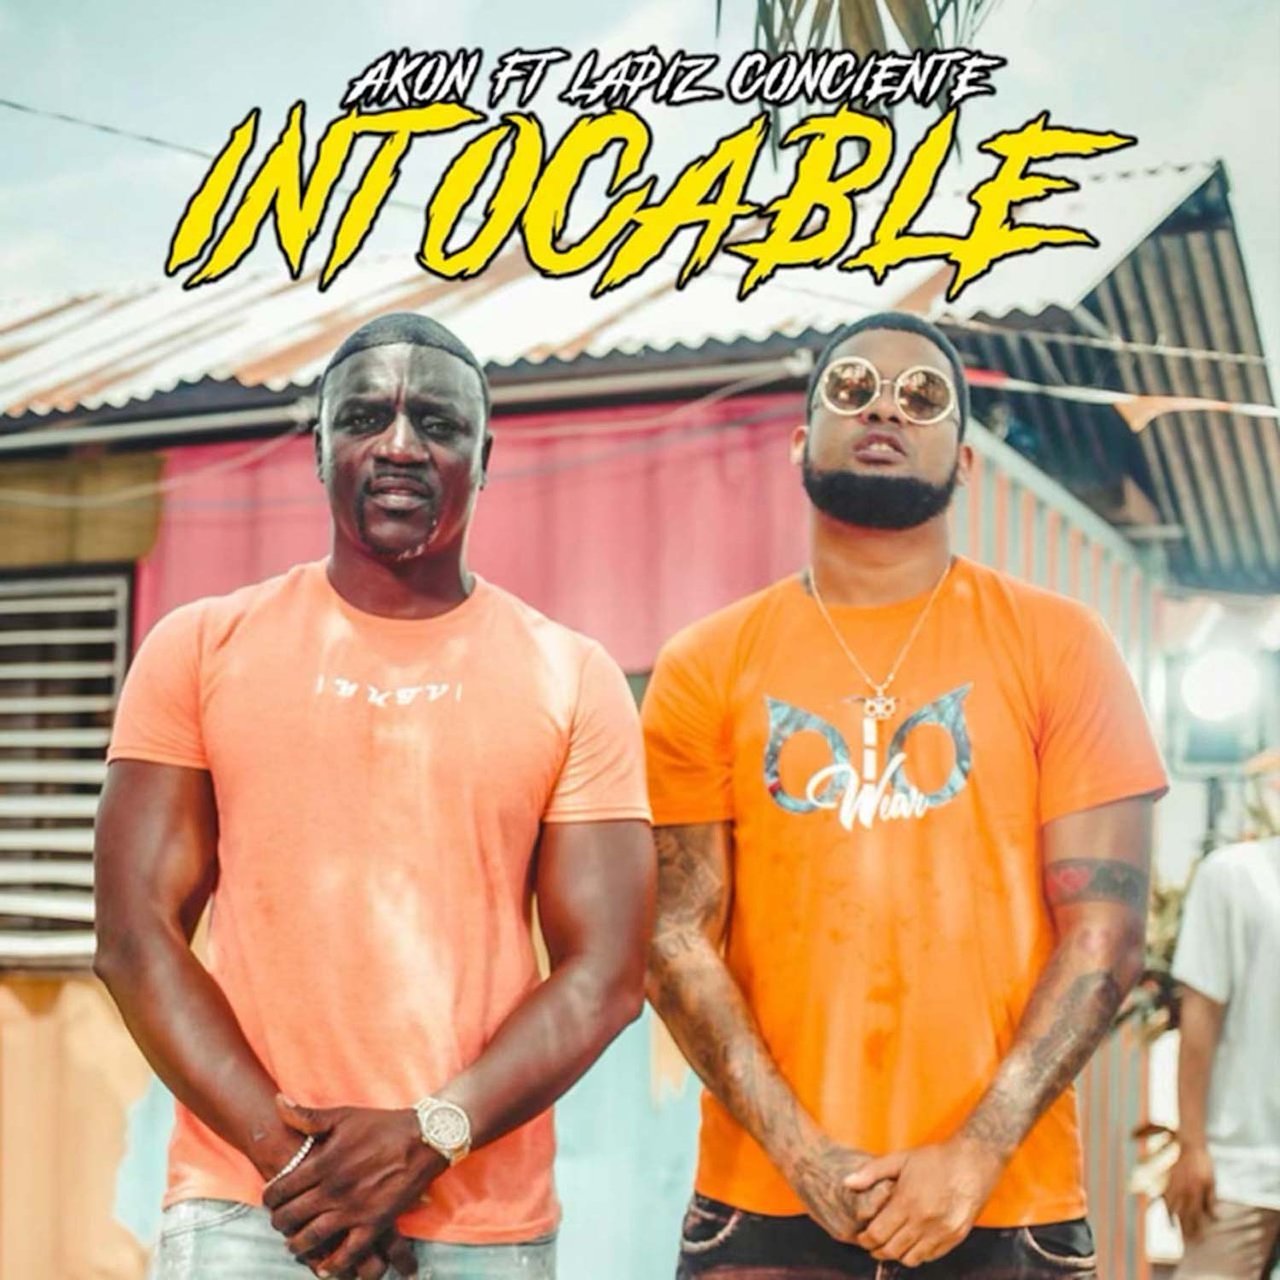 Akon - Intocable (ft. Lapiz Conciente) (Cover)